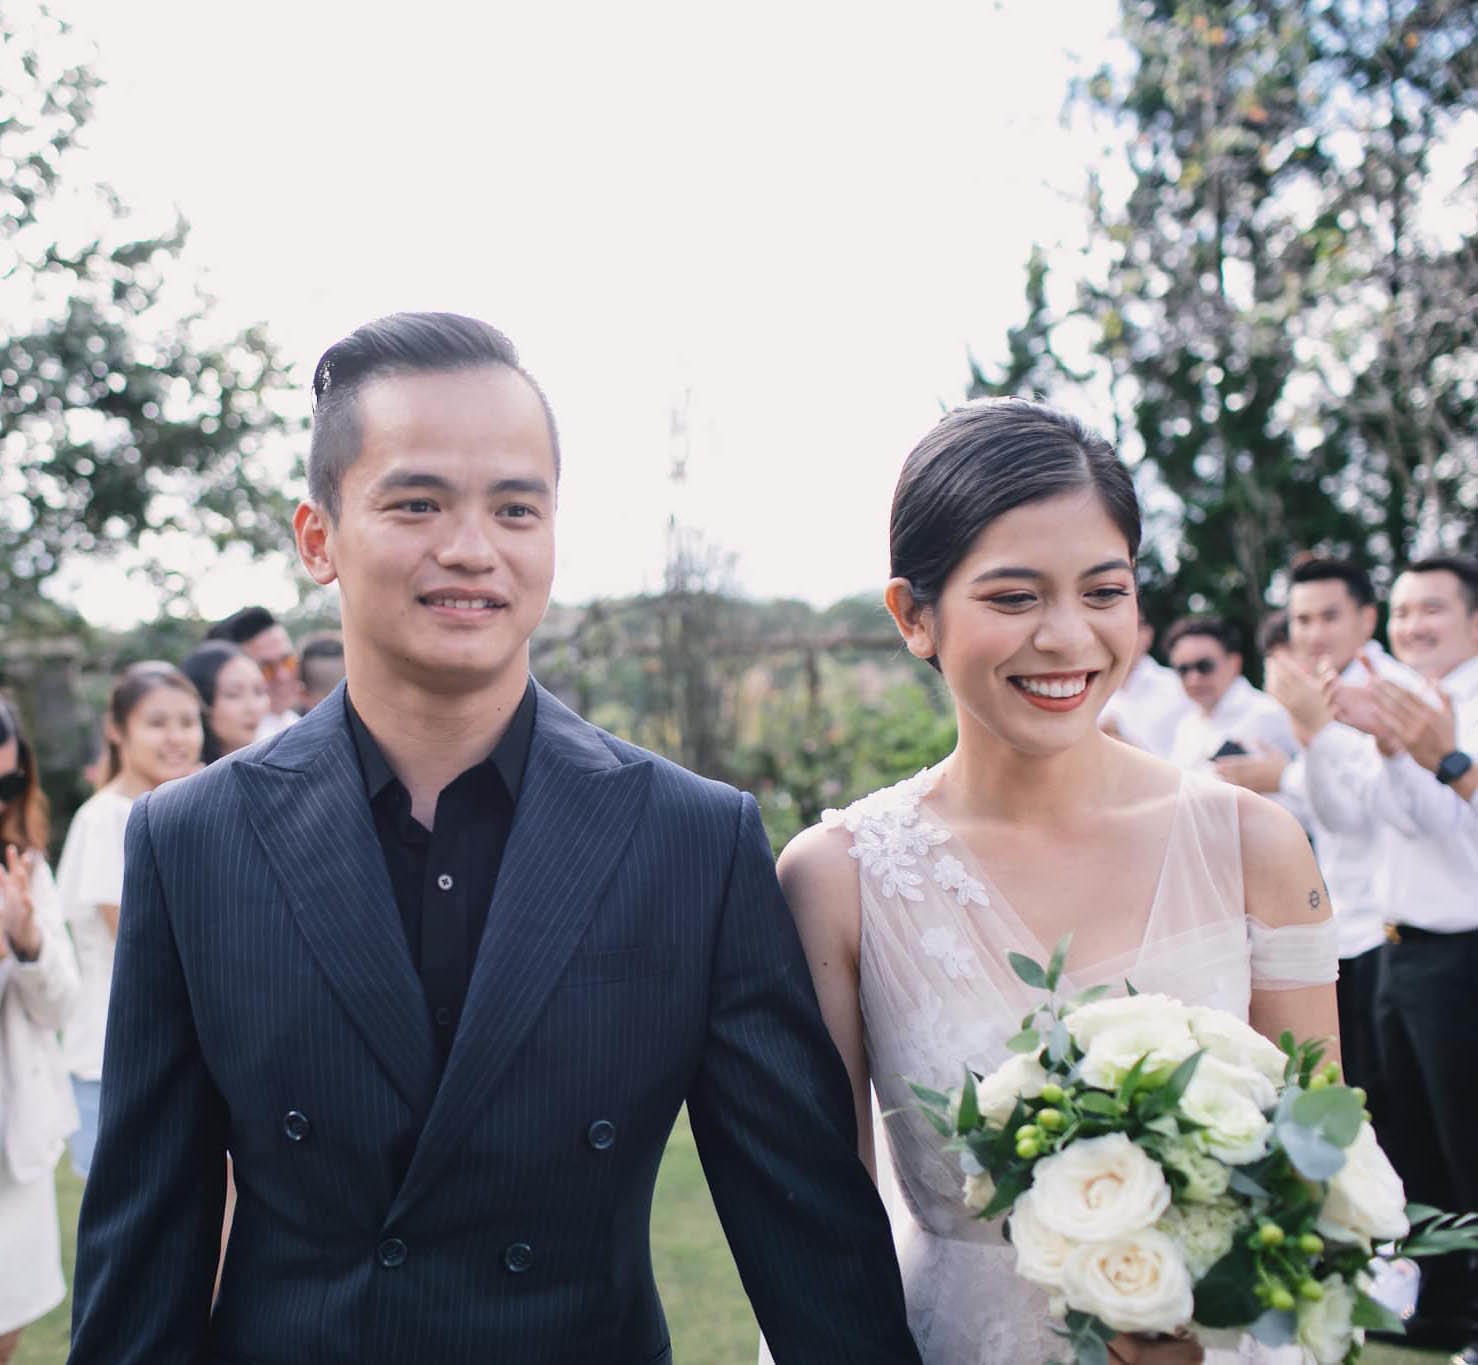 Hoàng Duy và Minh Trang chính thức về chung một nhà vào tháng 12/2019.